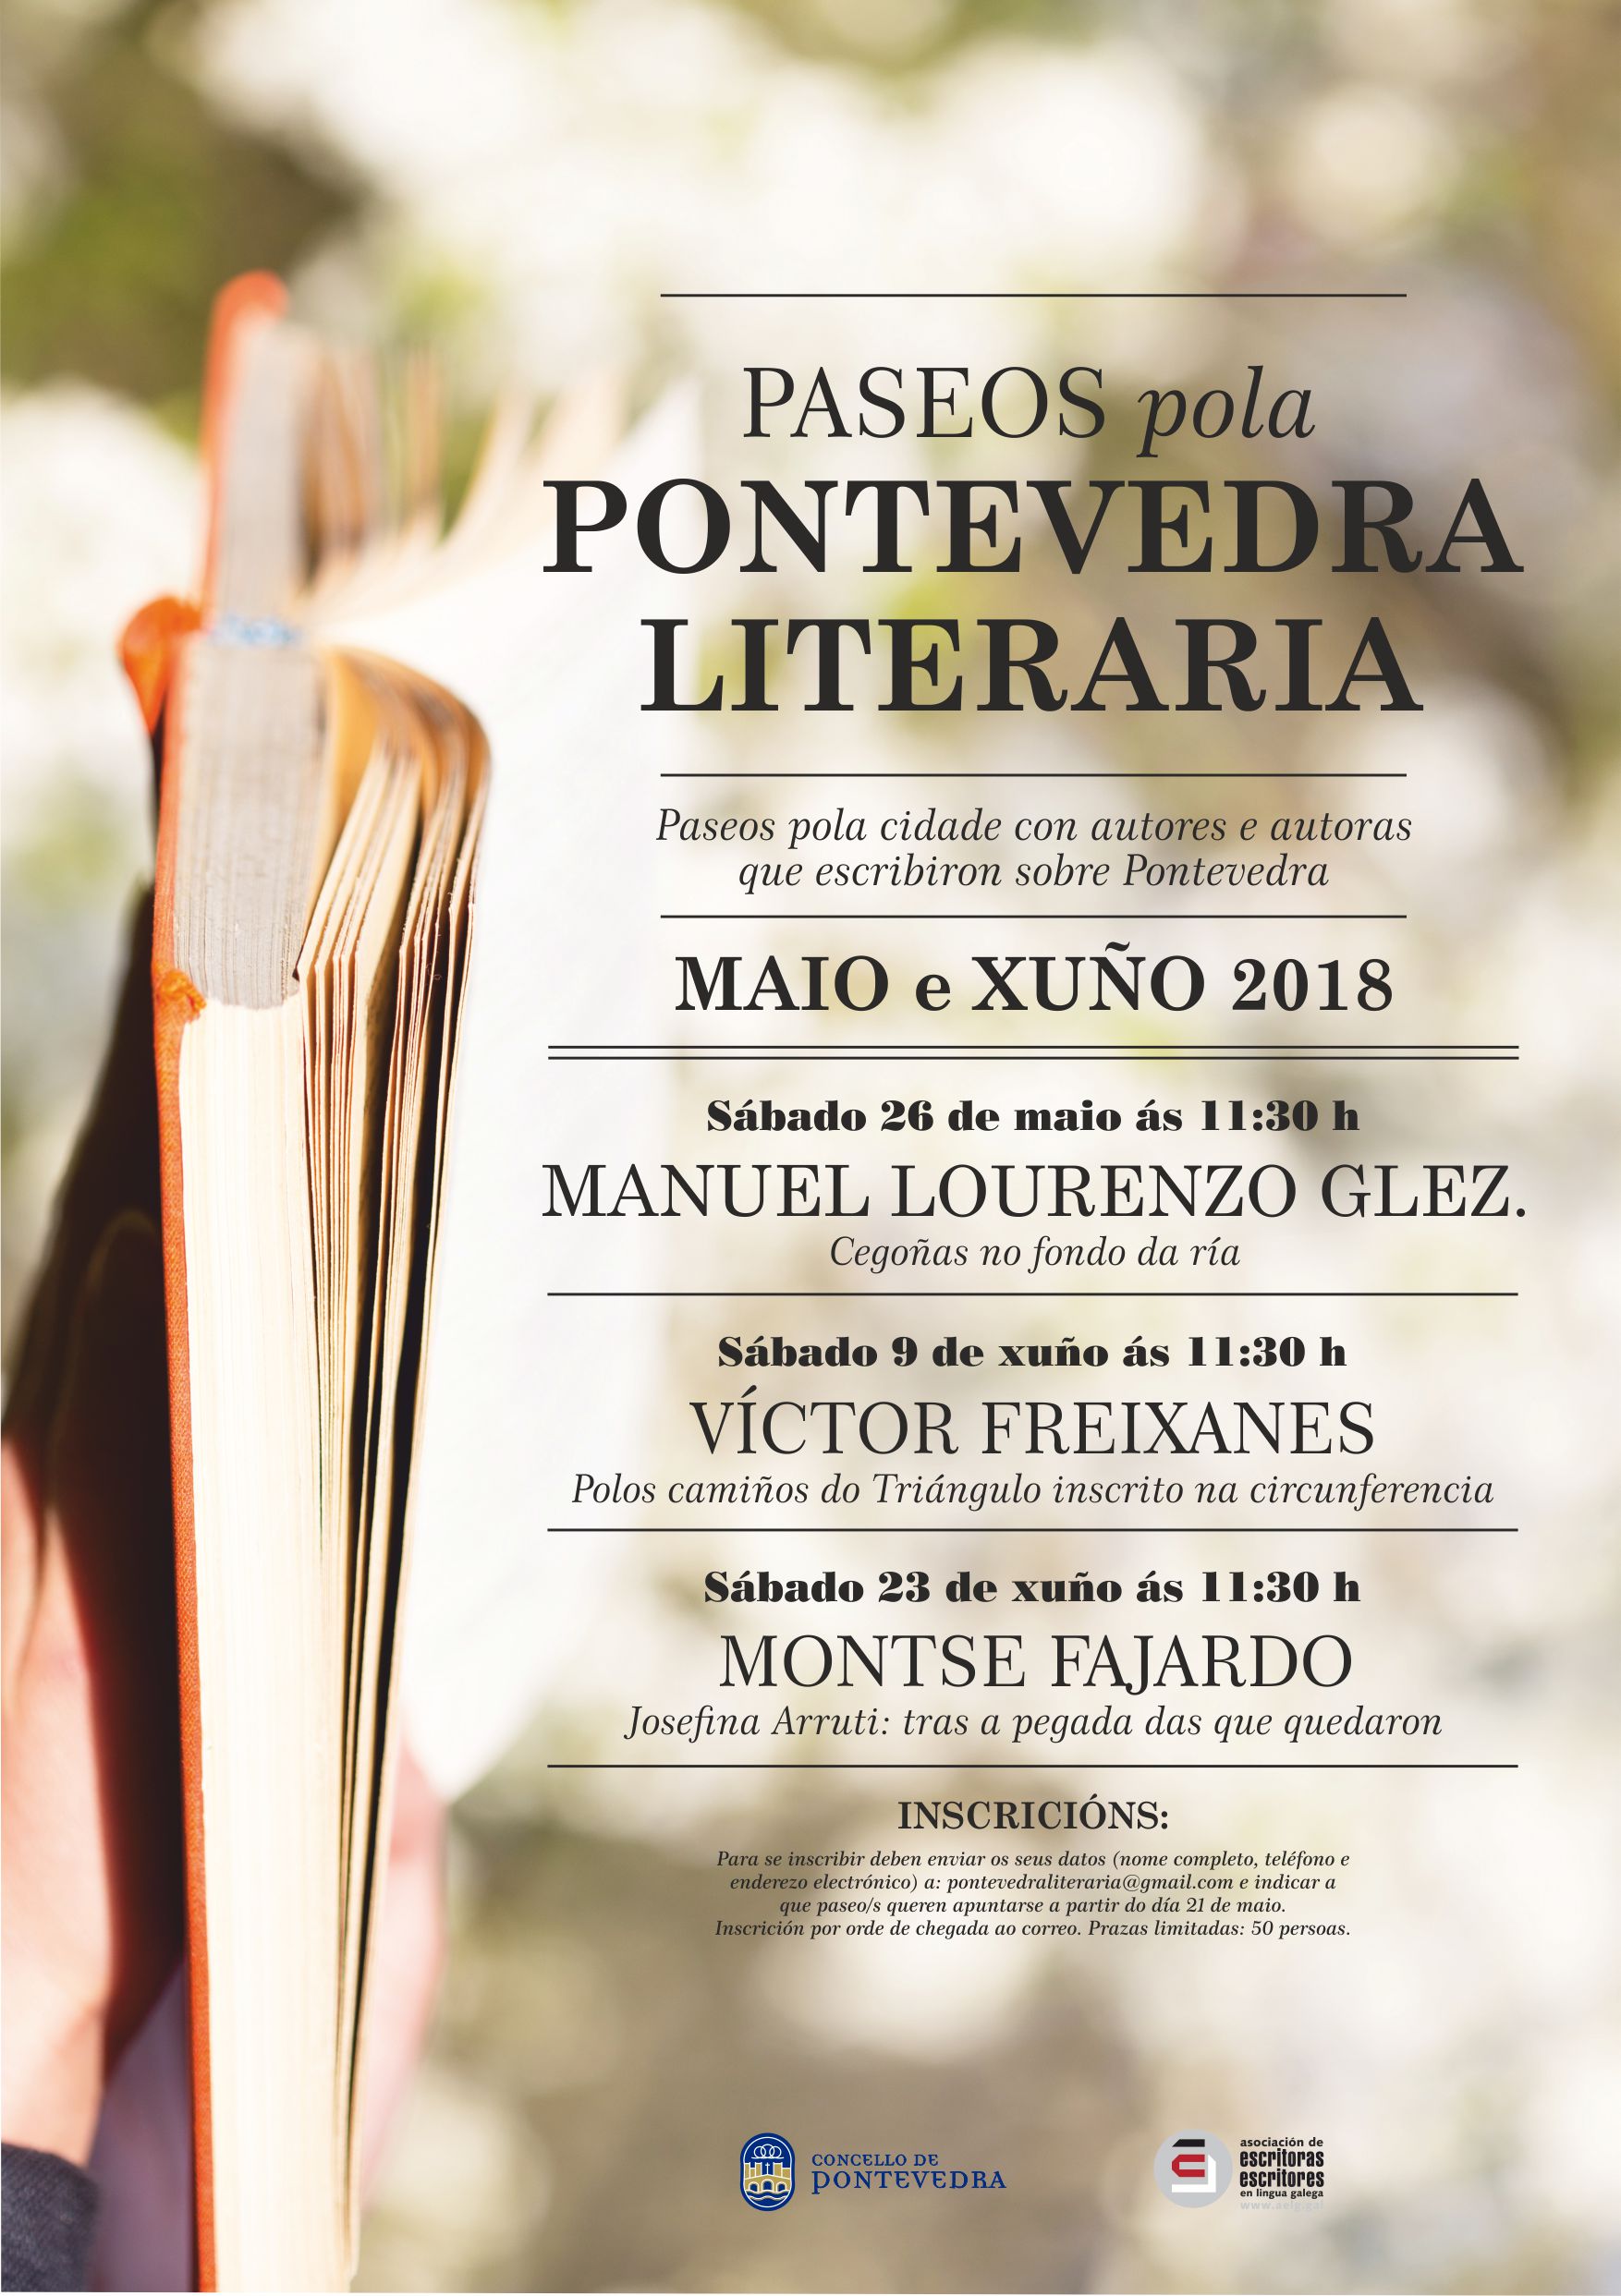 Paseos pola Pontevedra literaria